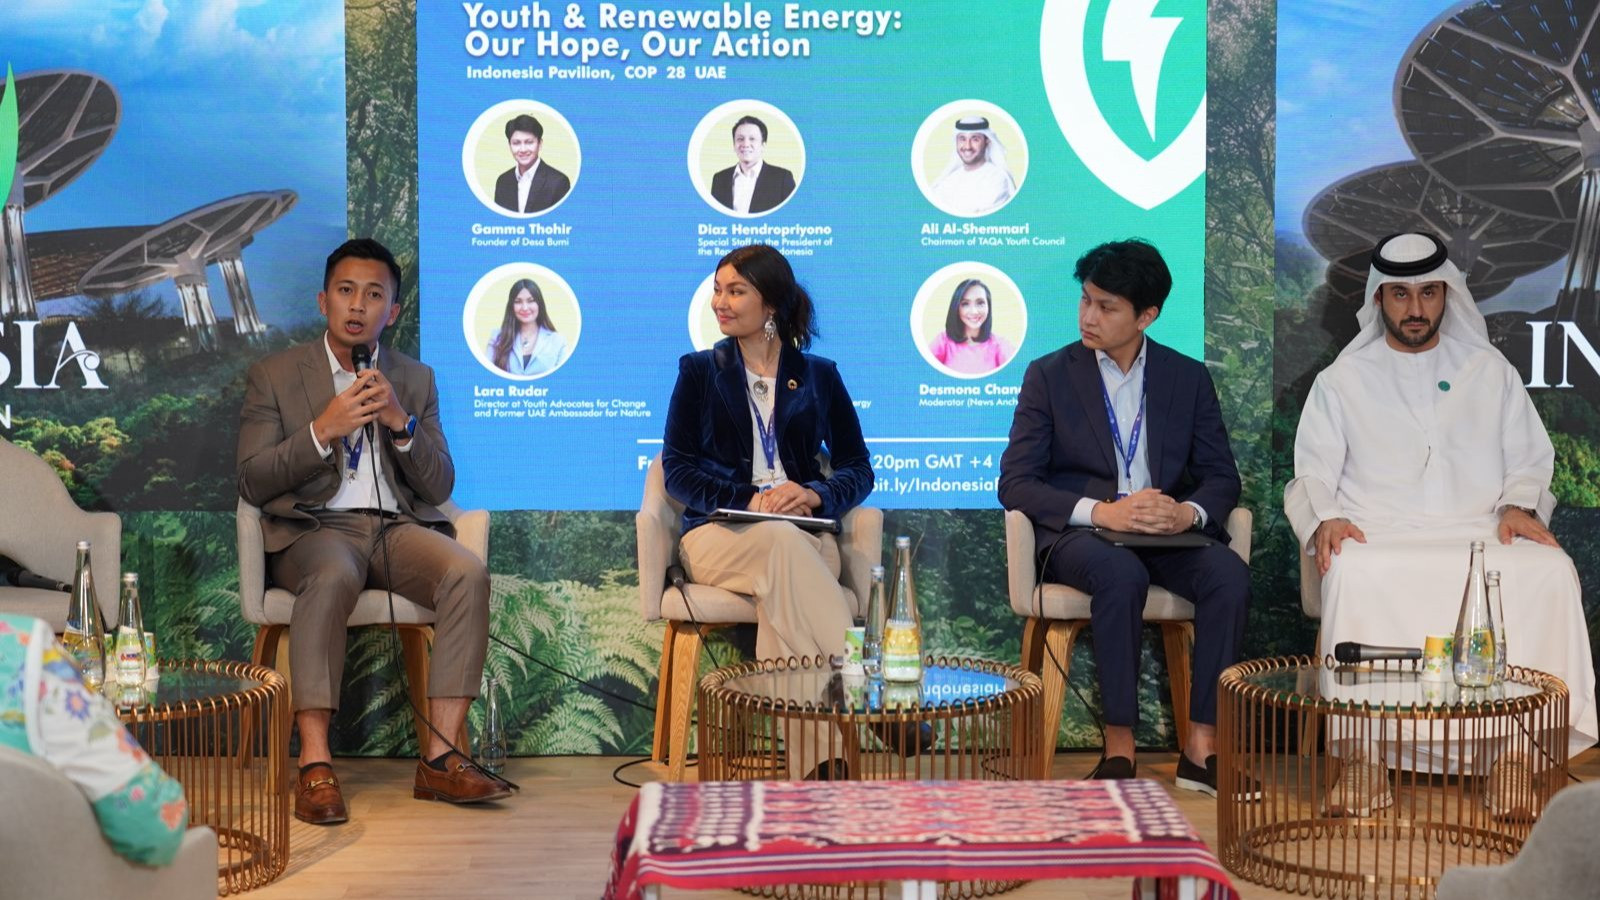 Paviliun Indonesia yang didukung oleh Kementerian Lingkungan Hidup dan Kehutanan (KLHK) turut aktif dalam menggerakkan peran anak muda dalam menghadapi tantangan perubahan iklim dunia.